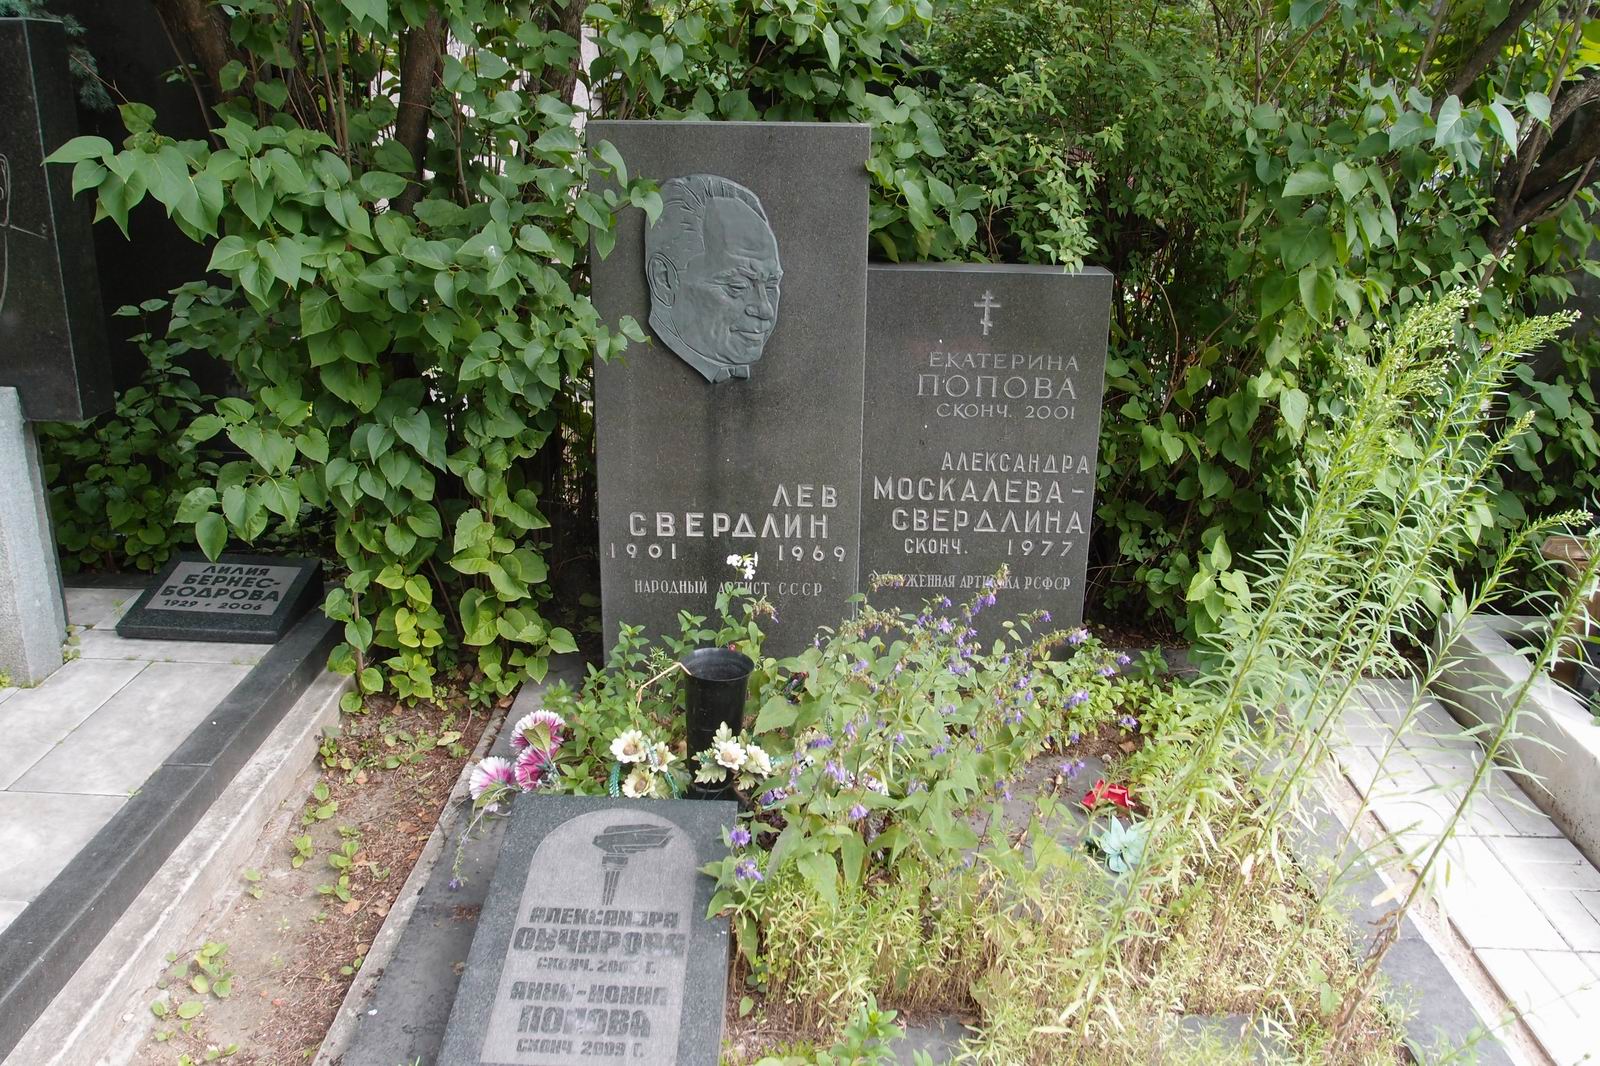 Памятник на могиле Свердлина Л.Н. (1901-1969), на Новодевичьем кладбище (7-8-10). Нажмите левую кнопку мыши чтобы увидеть фрагмент памятника.